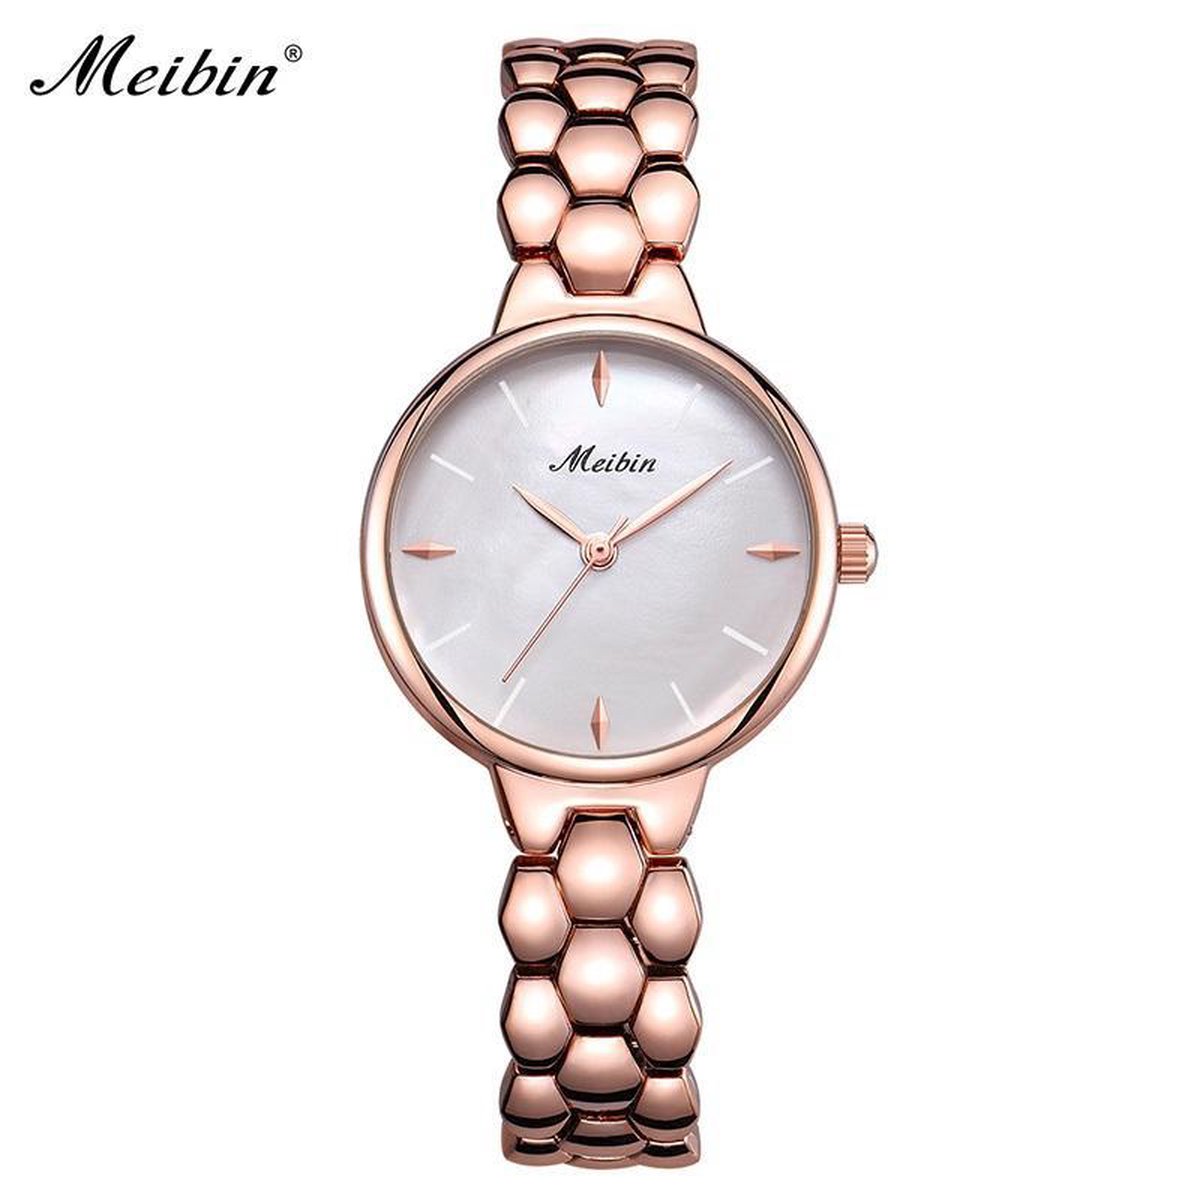 Longbo - Meibin - Dames Horloge - Rosé/Wit - 28mm